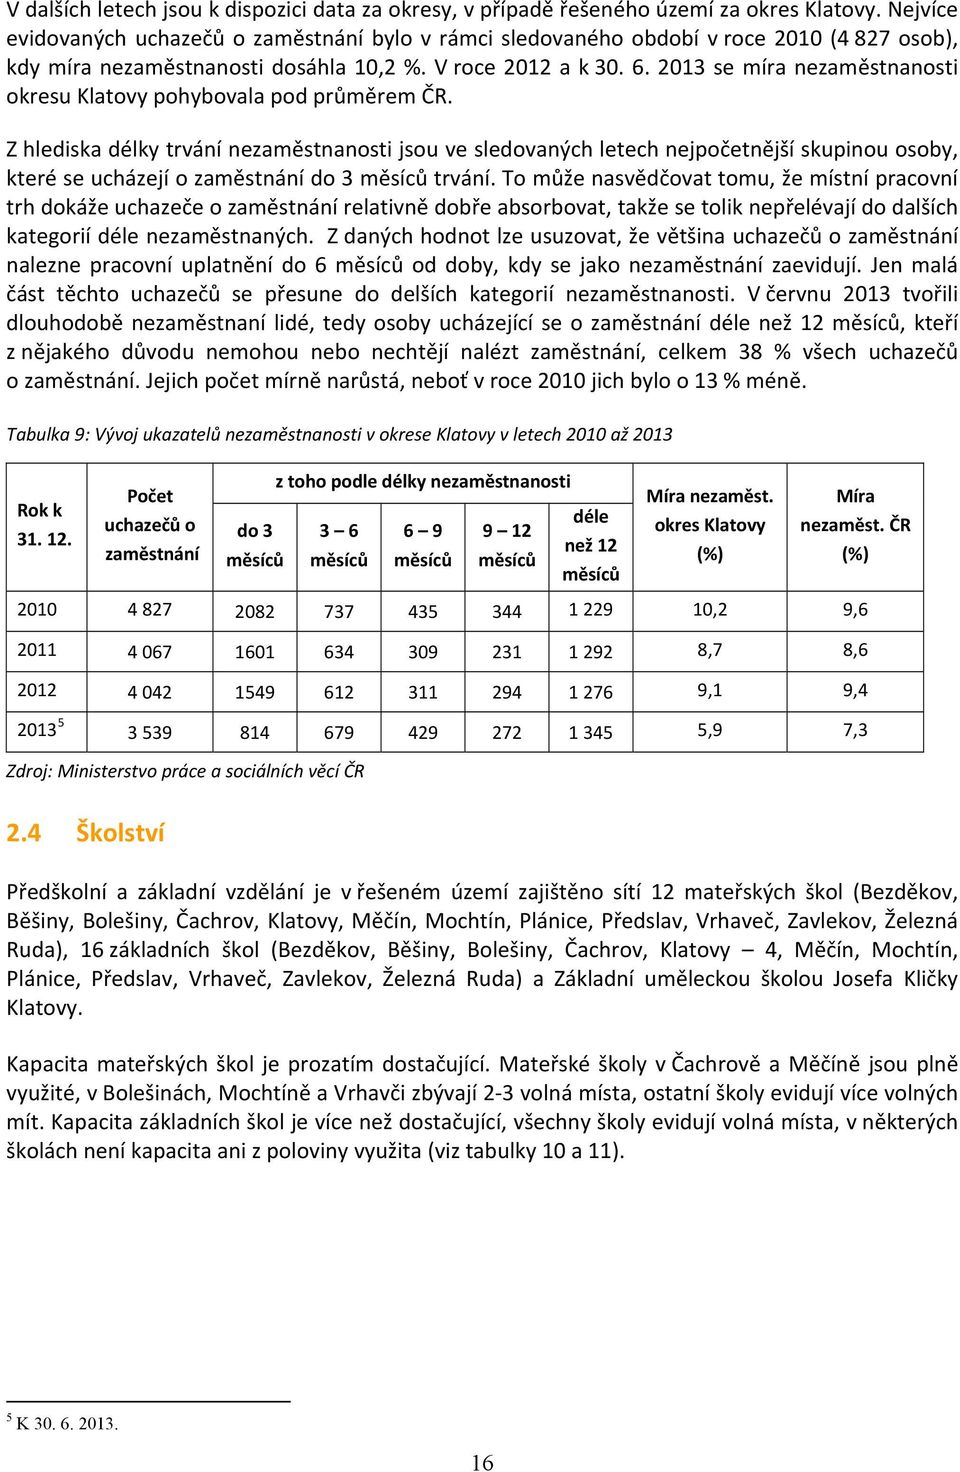 2013 se míra nezaměstnanosti okresu Klatovy pohybovala pod průměrem ČR.